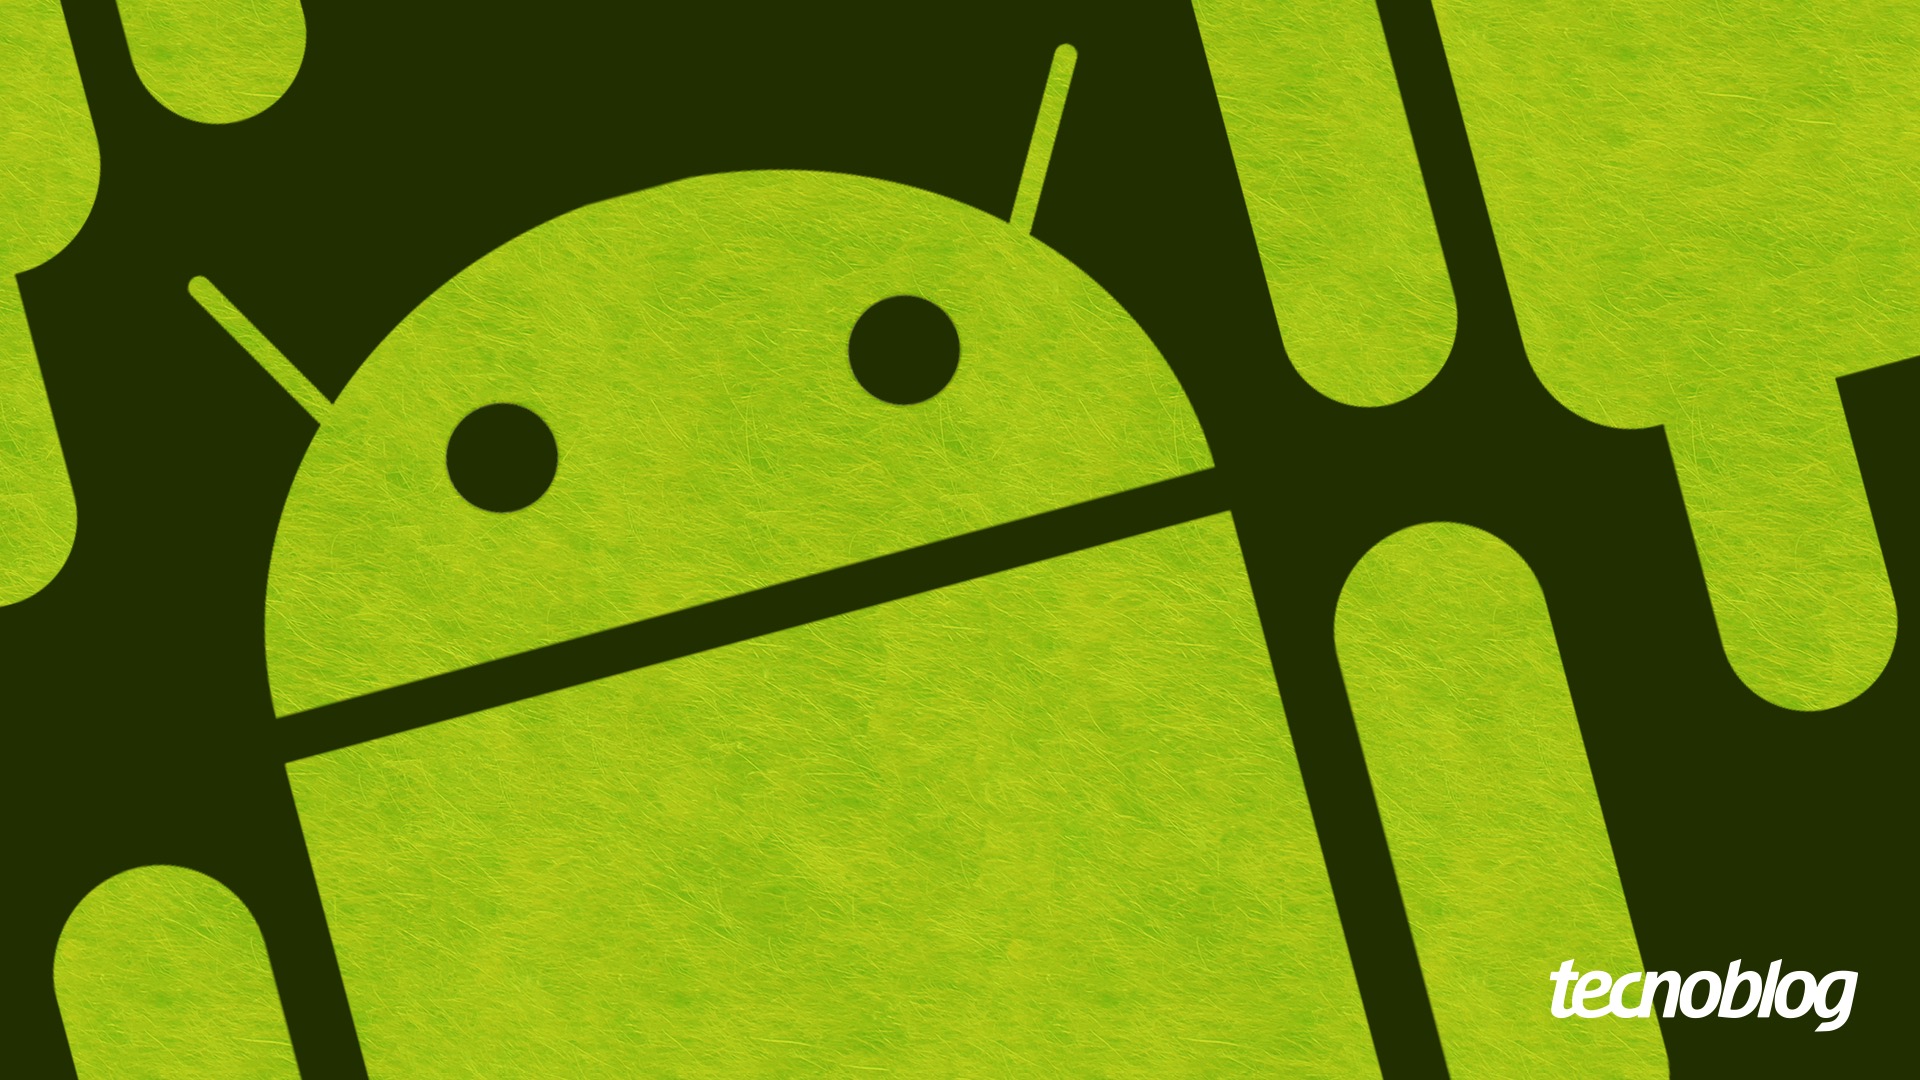 Android ganha joguinhos 'escondidos' em aplicativo nativo; veja